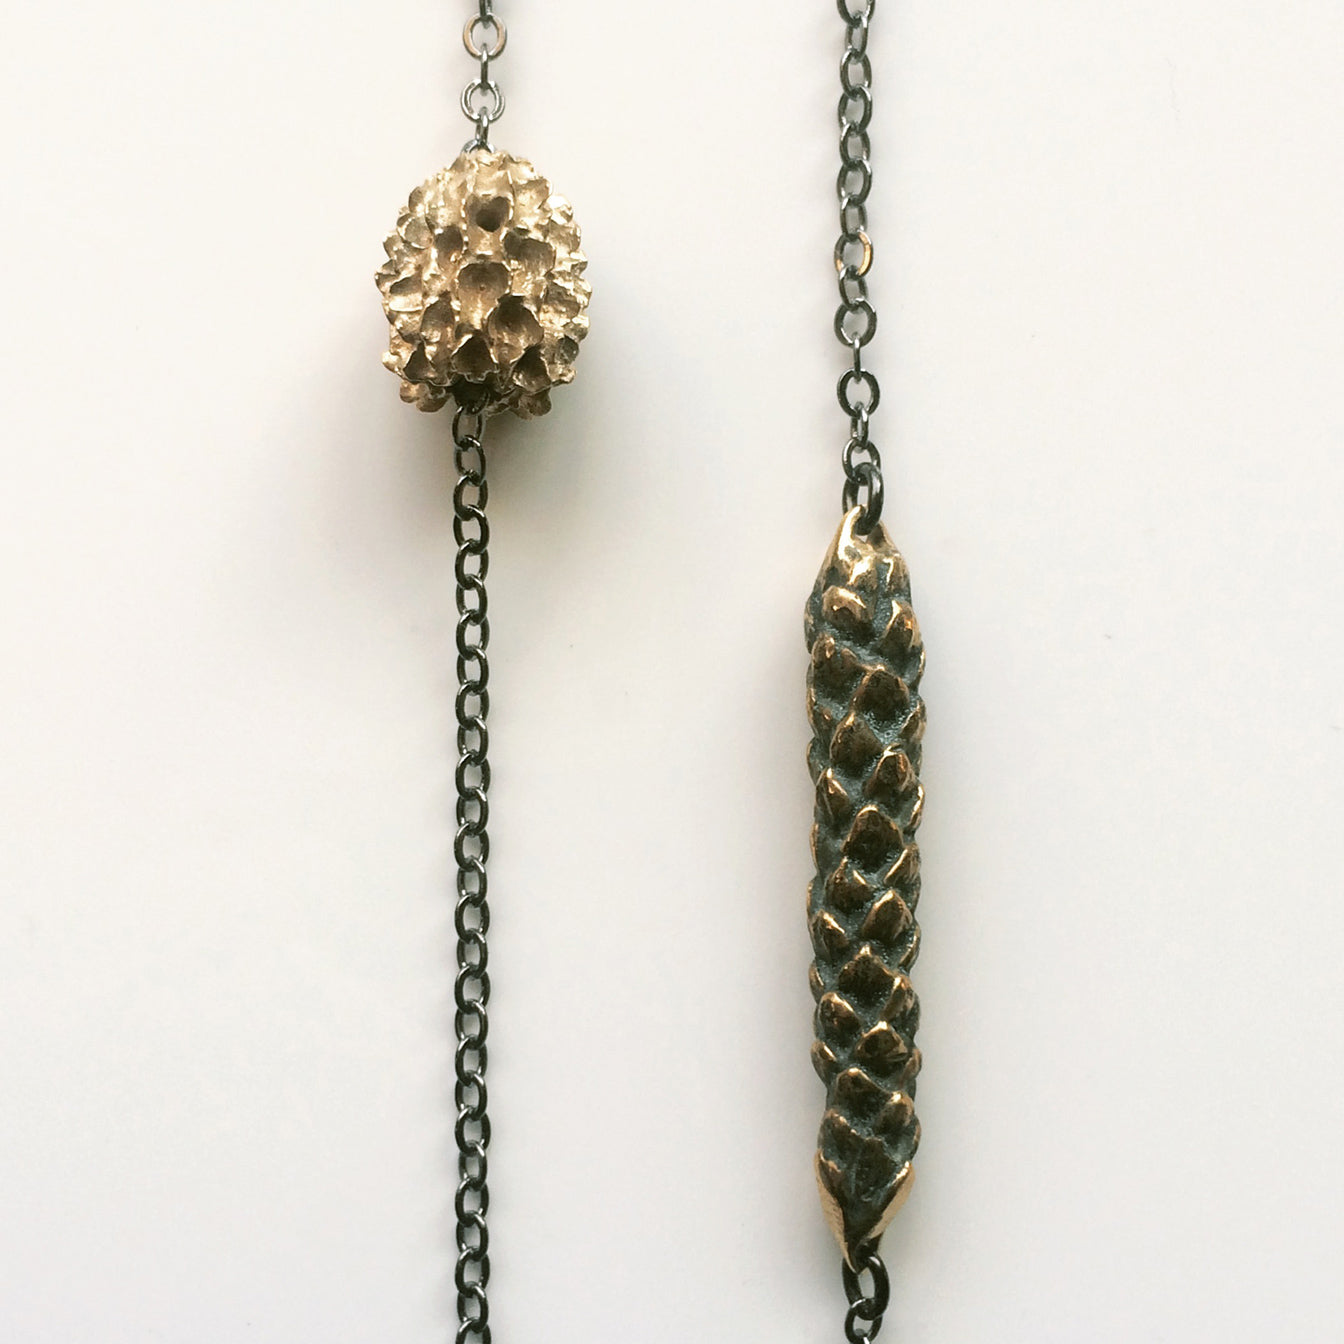 Araucaria Pod Necklace - Bronze or Silver